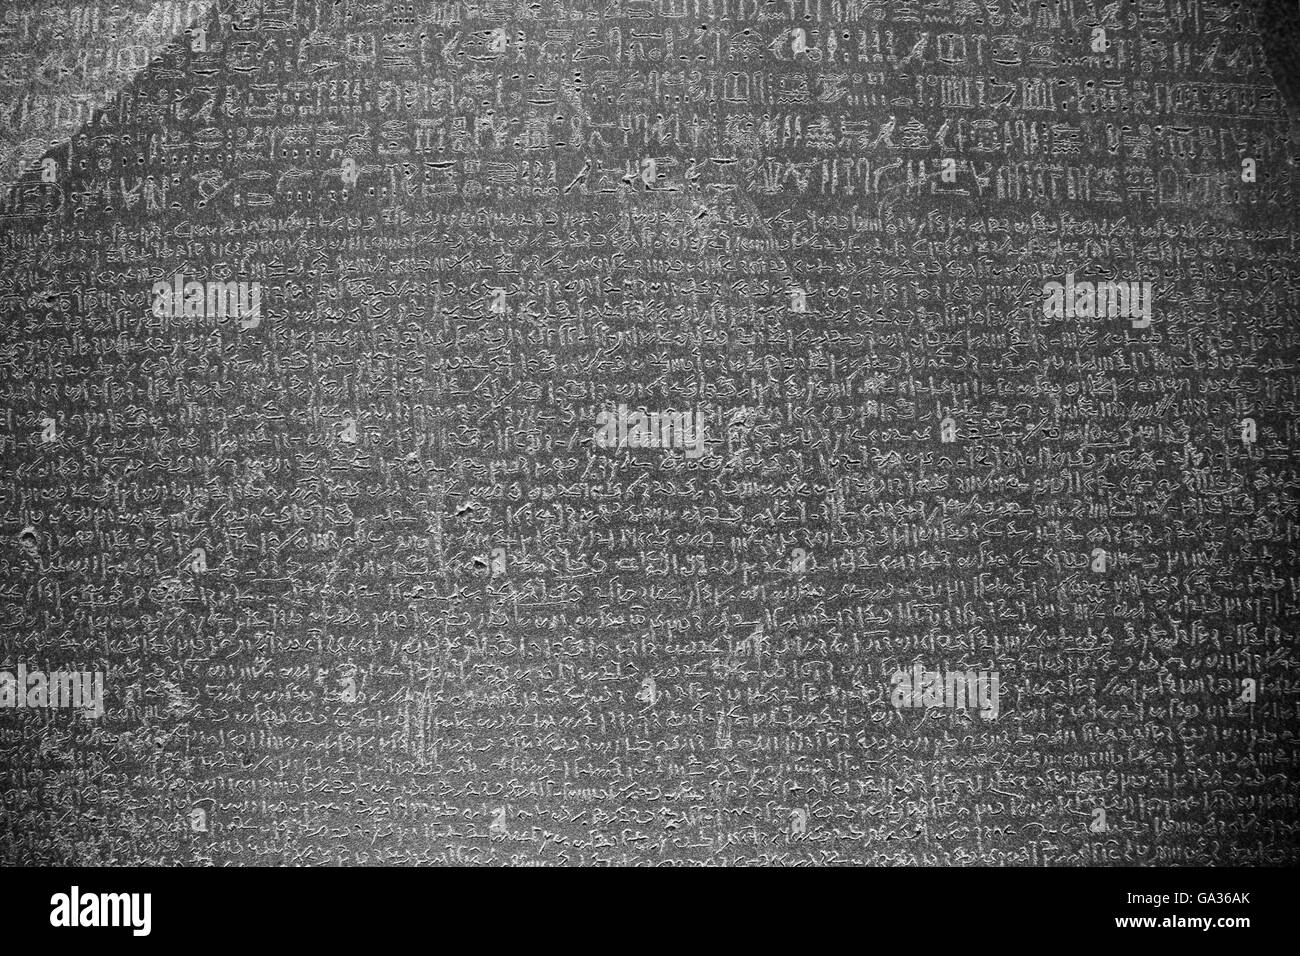 Rosetta Stone, 196 BC, British Museum, London, UK Stockfoto